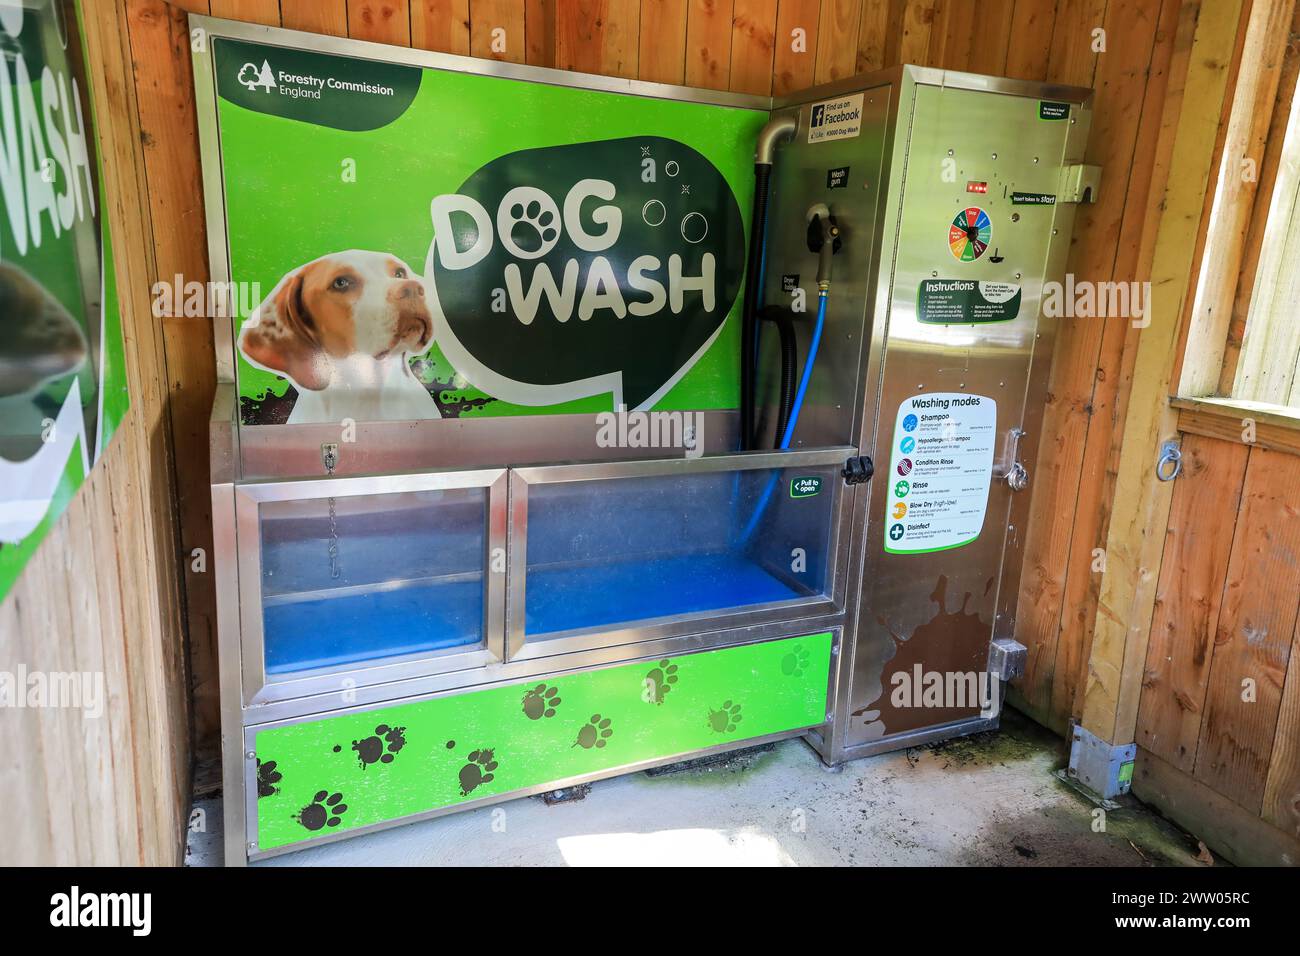 Une machine automatique de lavage de chiens à Cardinham Woods, un site géré par Forestry England, Cornwall, Angleterre, Royaume-Uni Banque D'Images